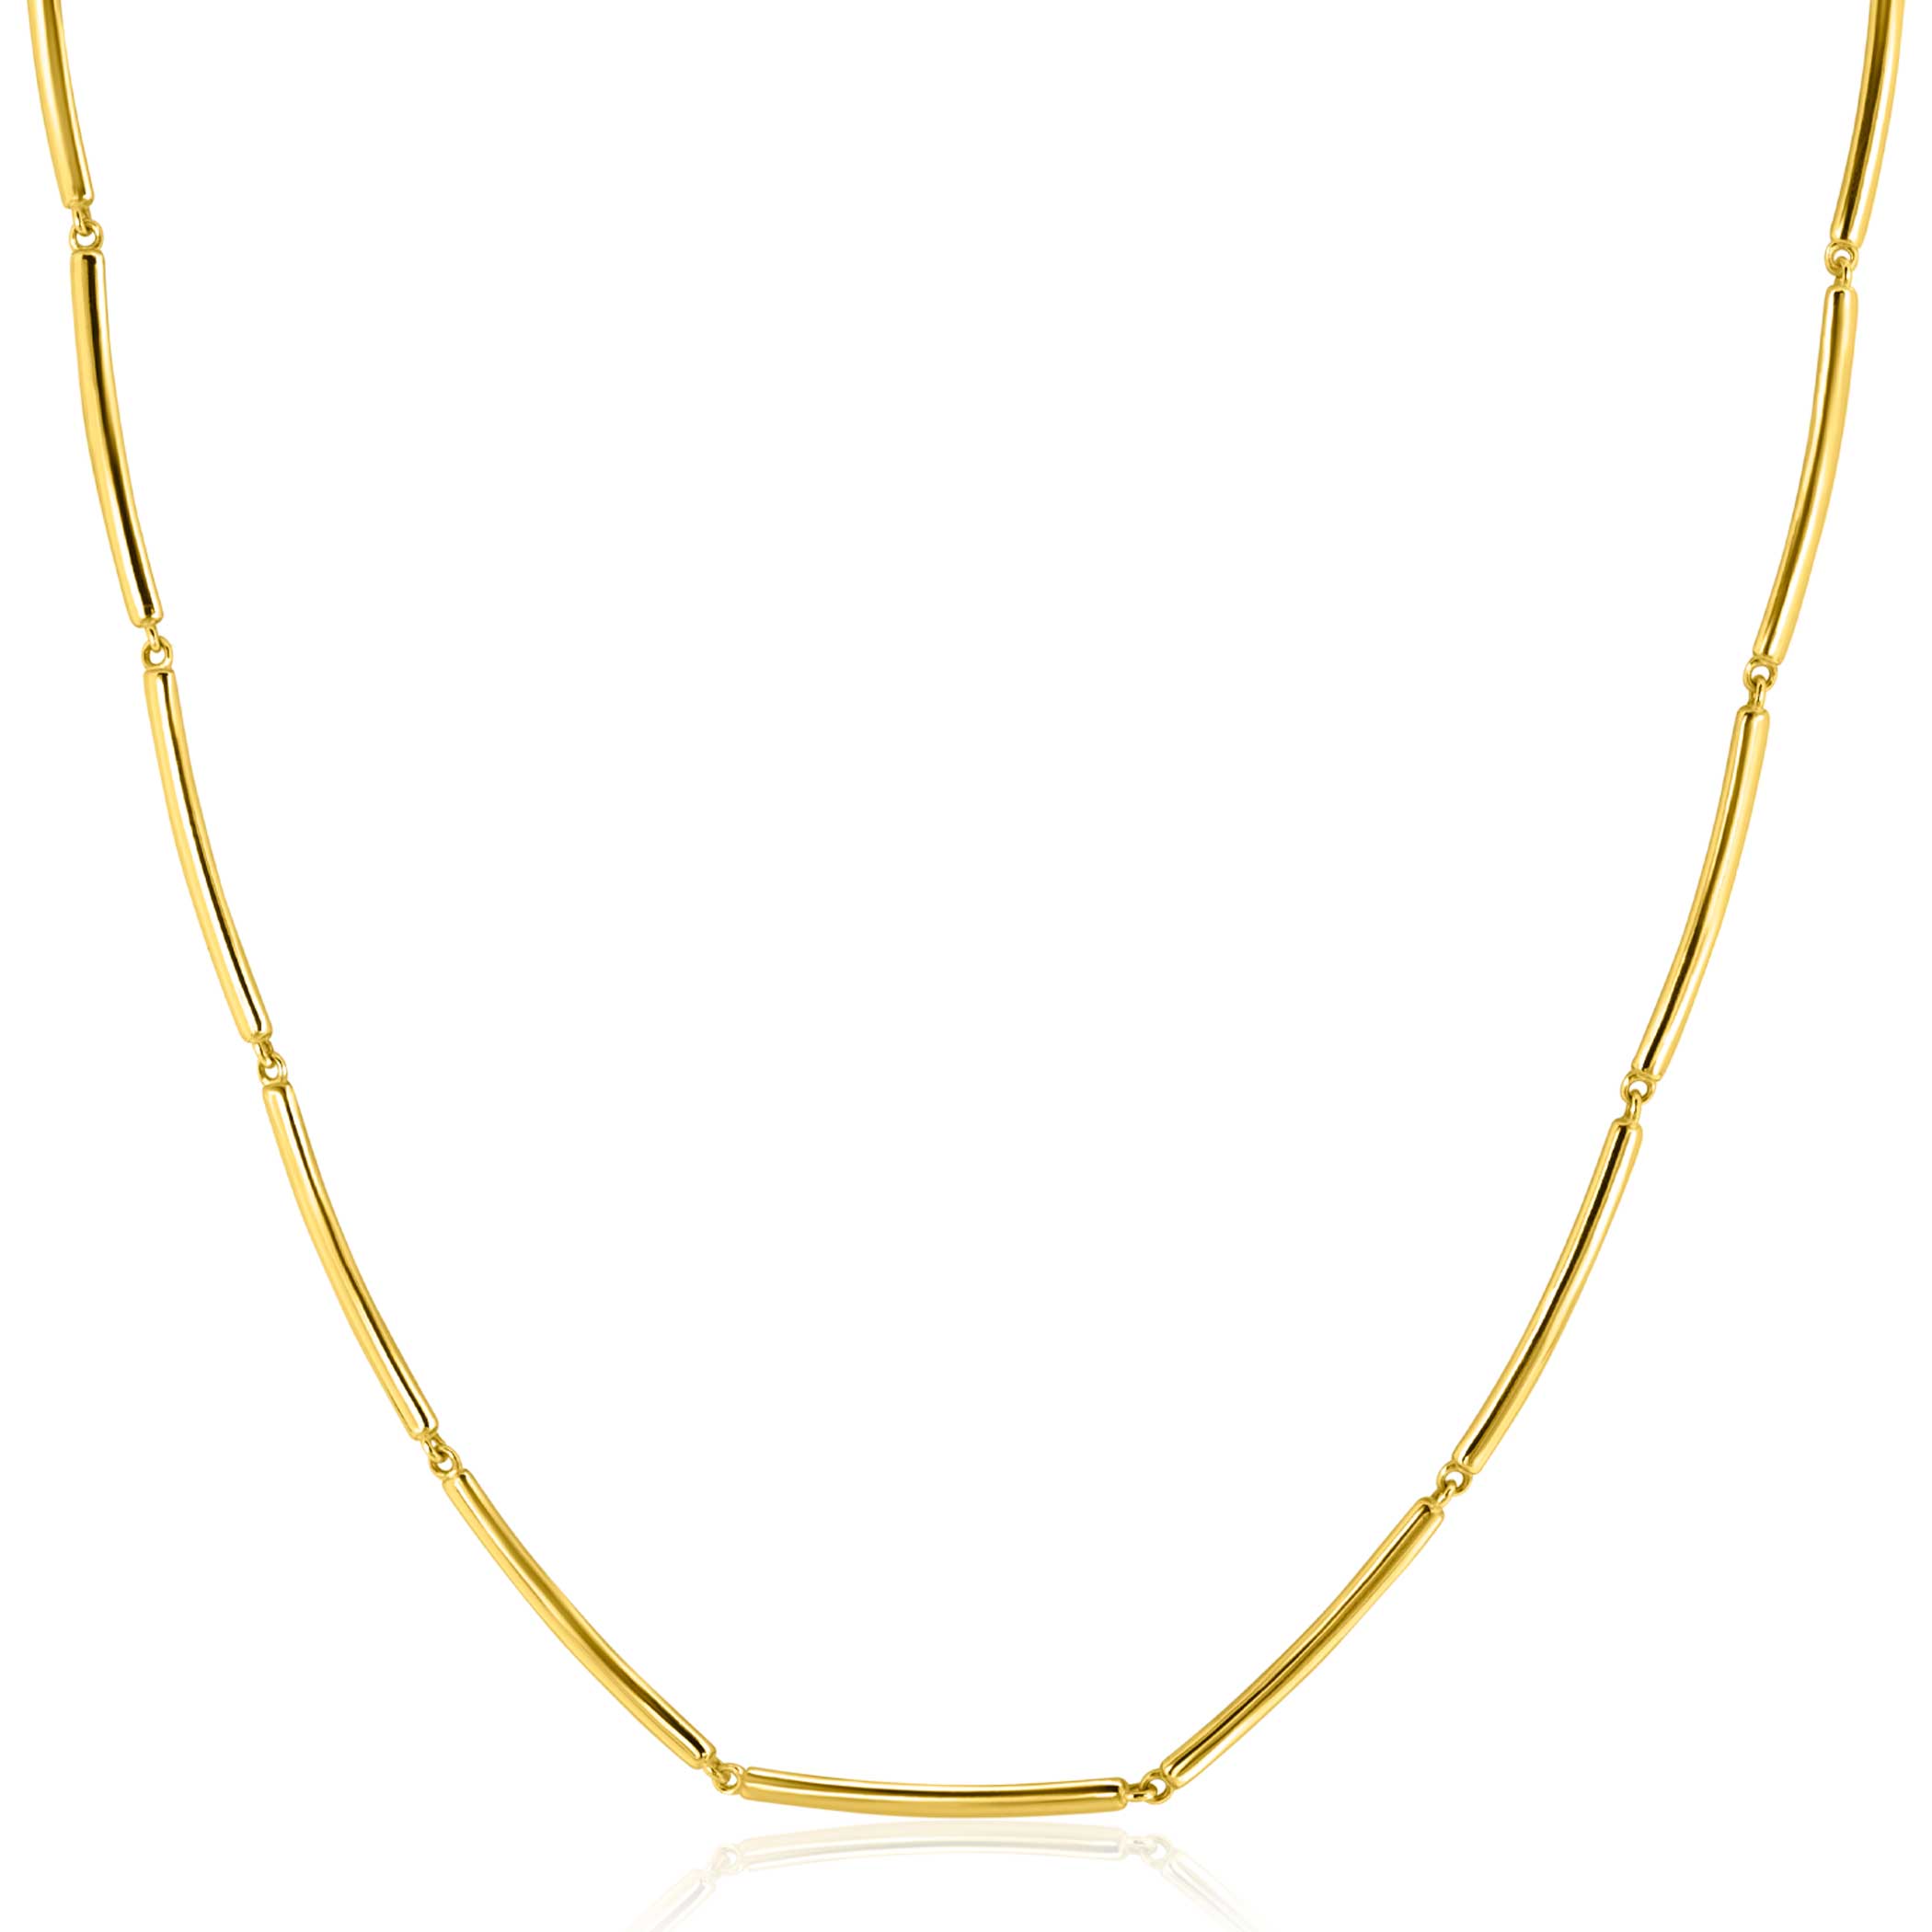 ZINZI Gold 14 krt gouden ketting met langwerpige glanzende staafjes 1,6mm breed 40-43cm ZGC461
